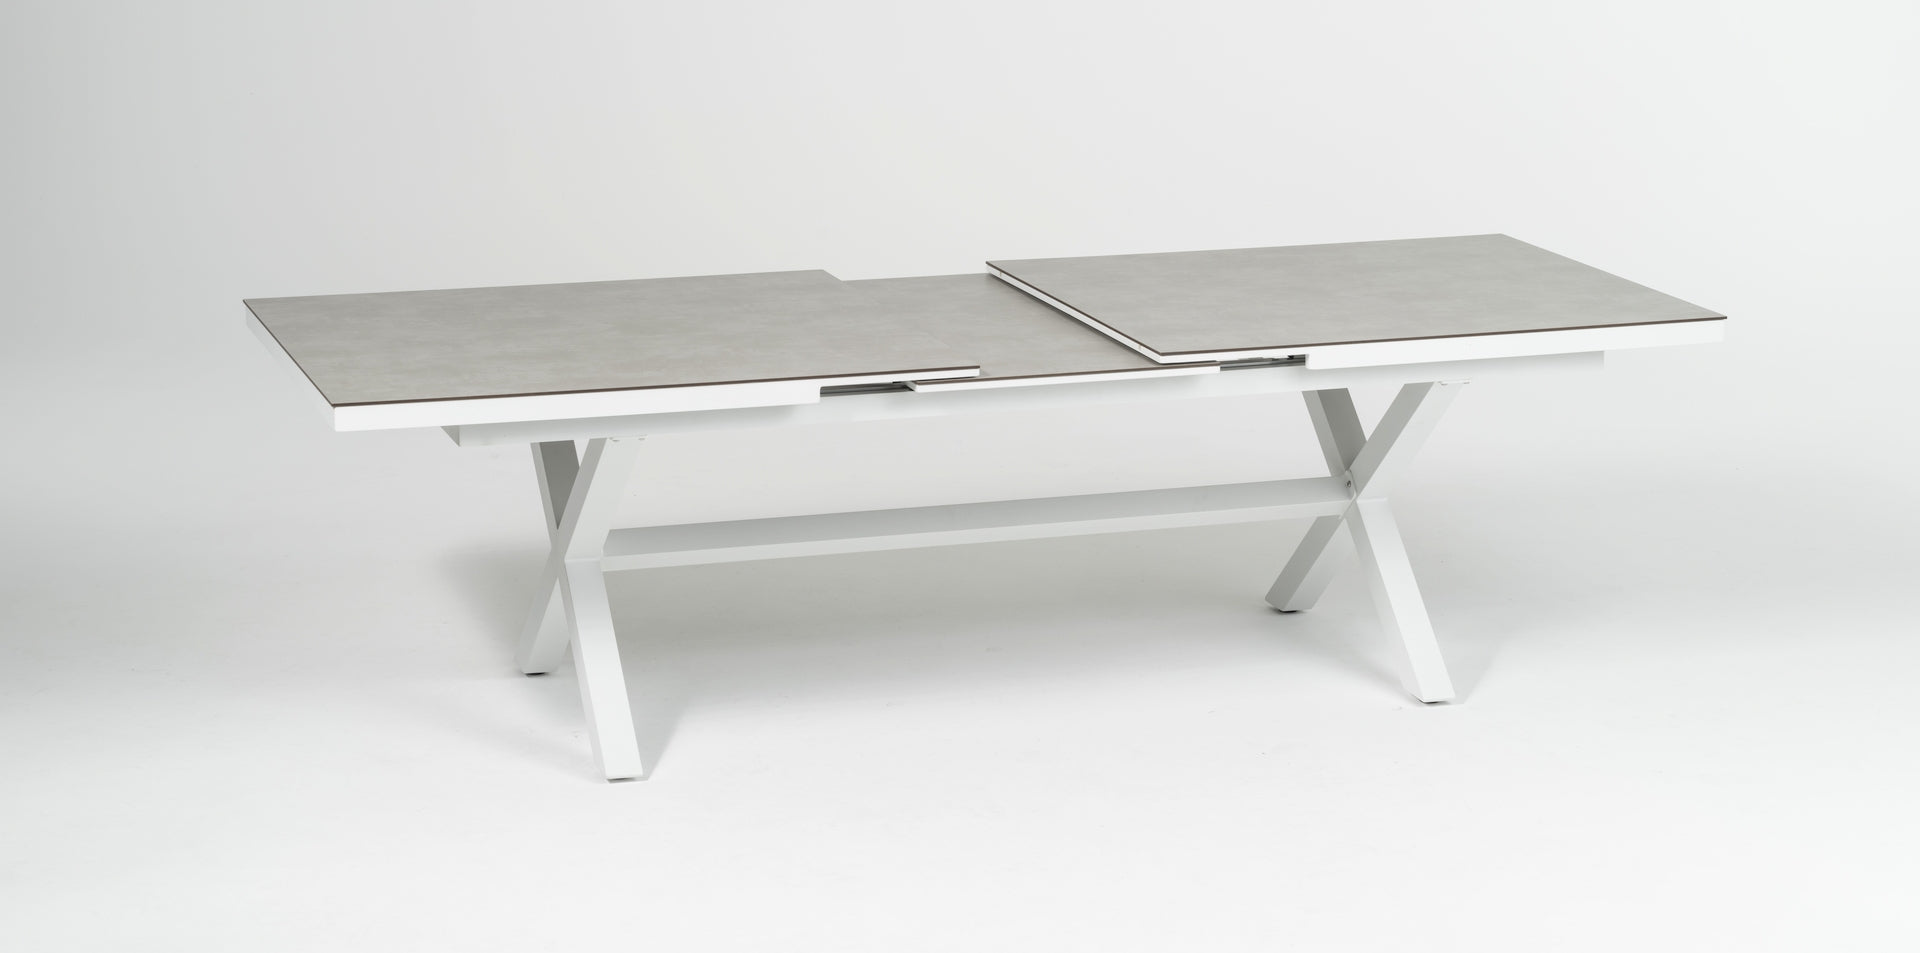 Stilvoller 'Lexy' Gartentisch in weißem Steindekor mit HPL-Platte und innovativem Synchronauszug, verfügbar bei Gartenmoebelshop.at